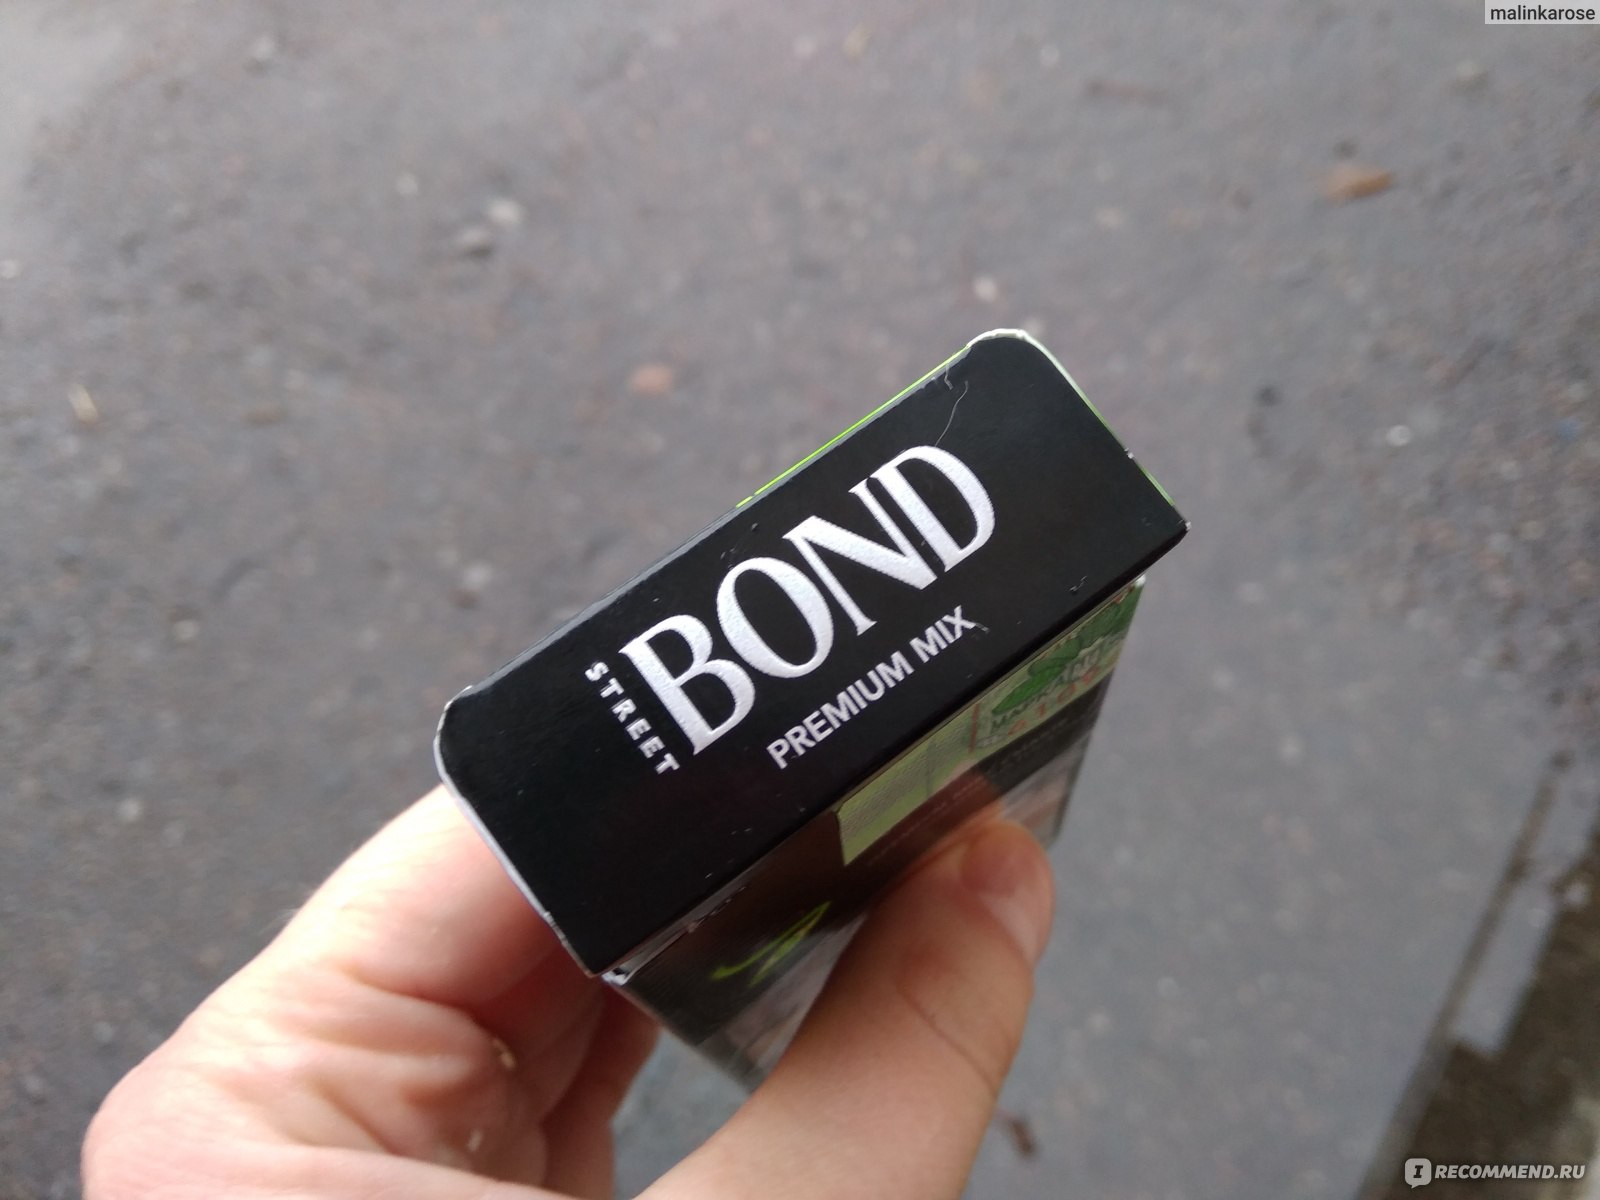 Сигареты Bond Street Compact Premium Mix Capsule